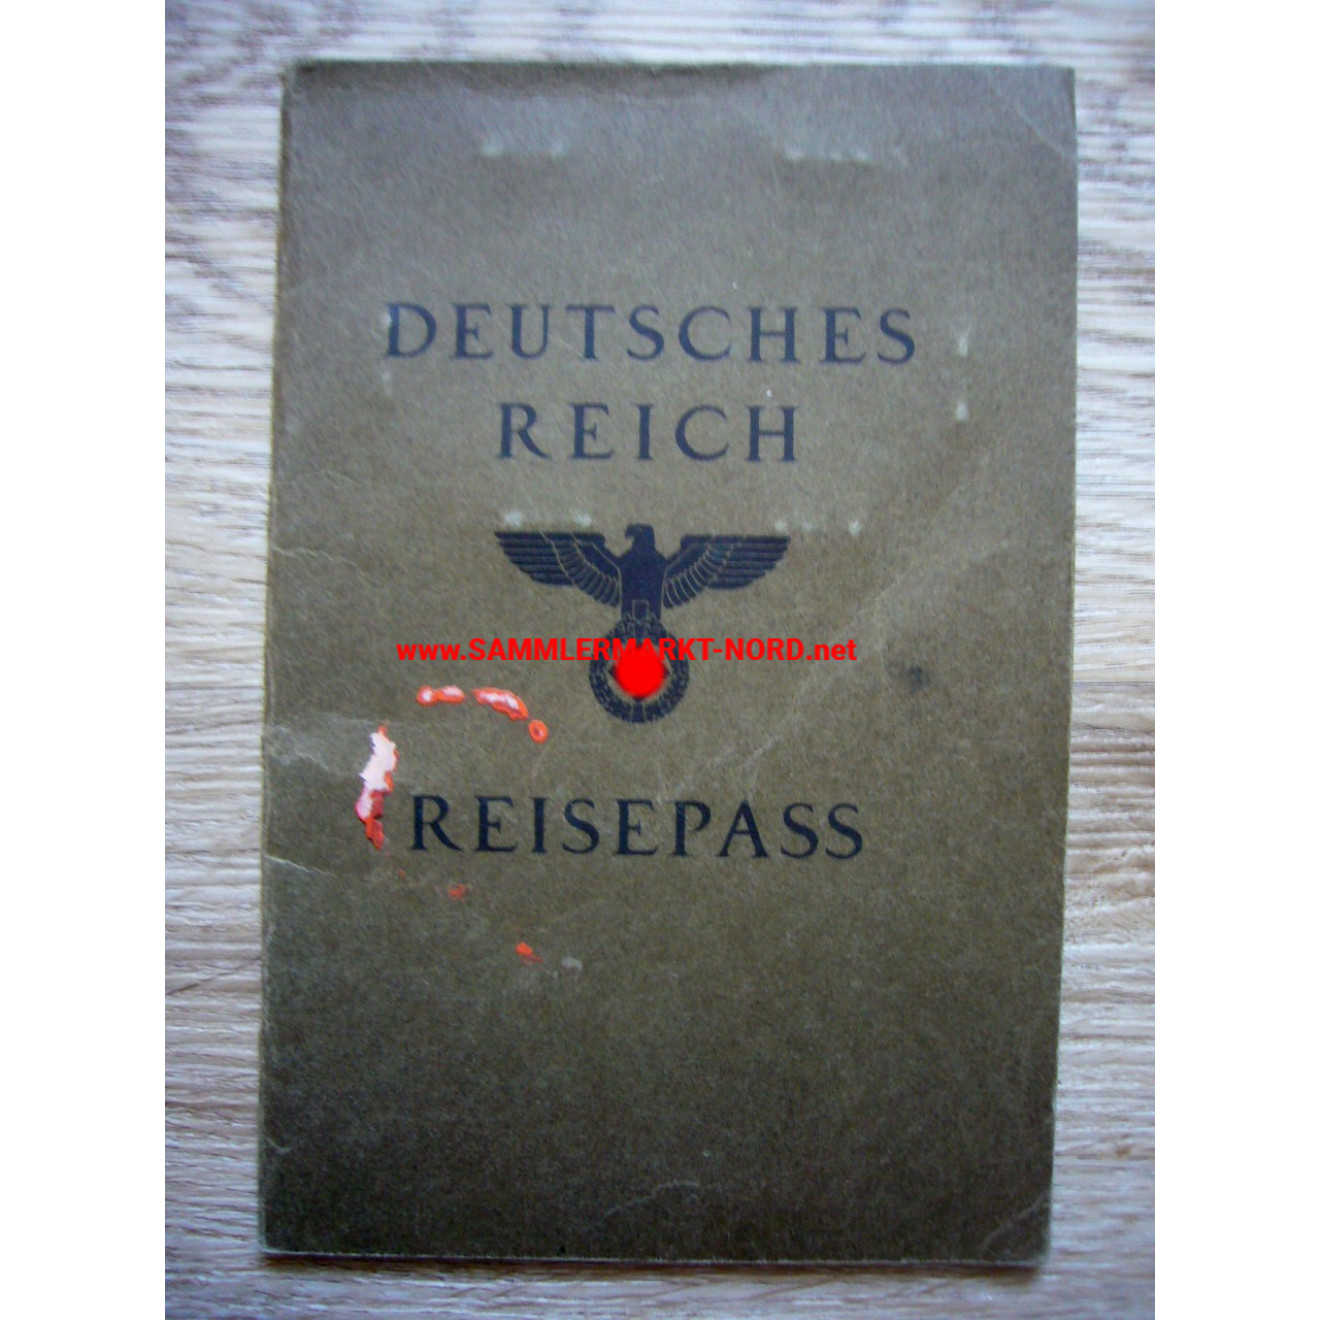 German Reich - Travel passport - Bad Oldesloe 1937